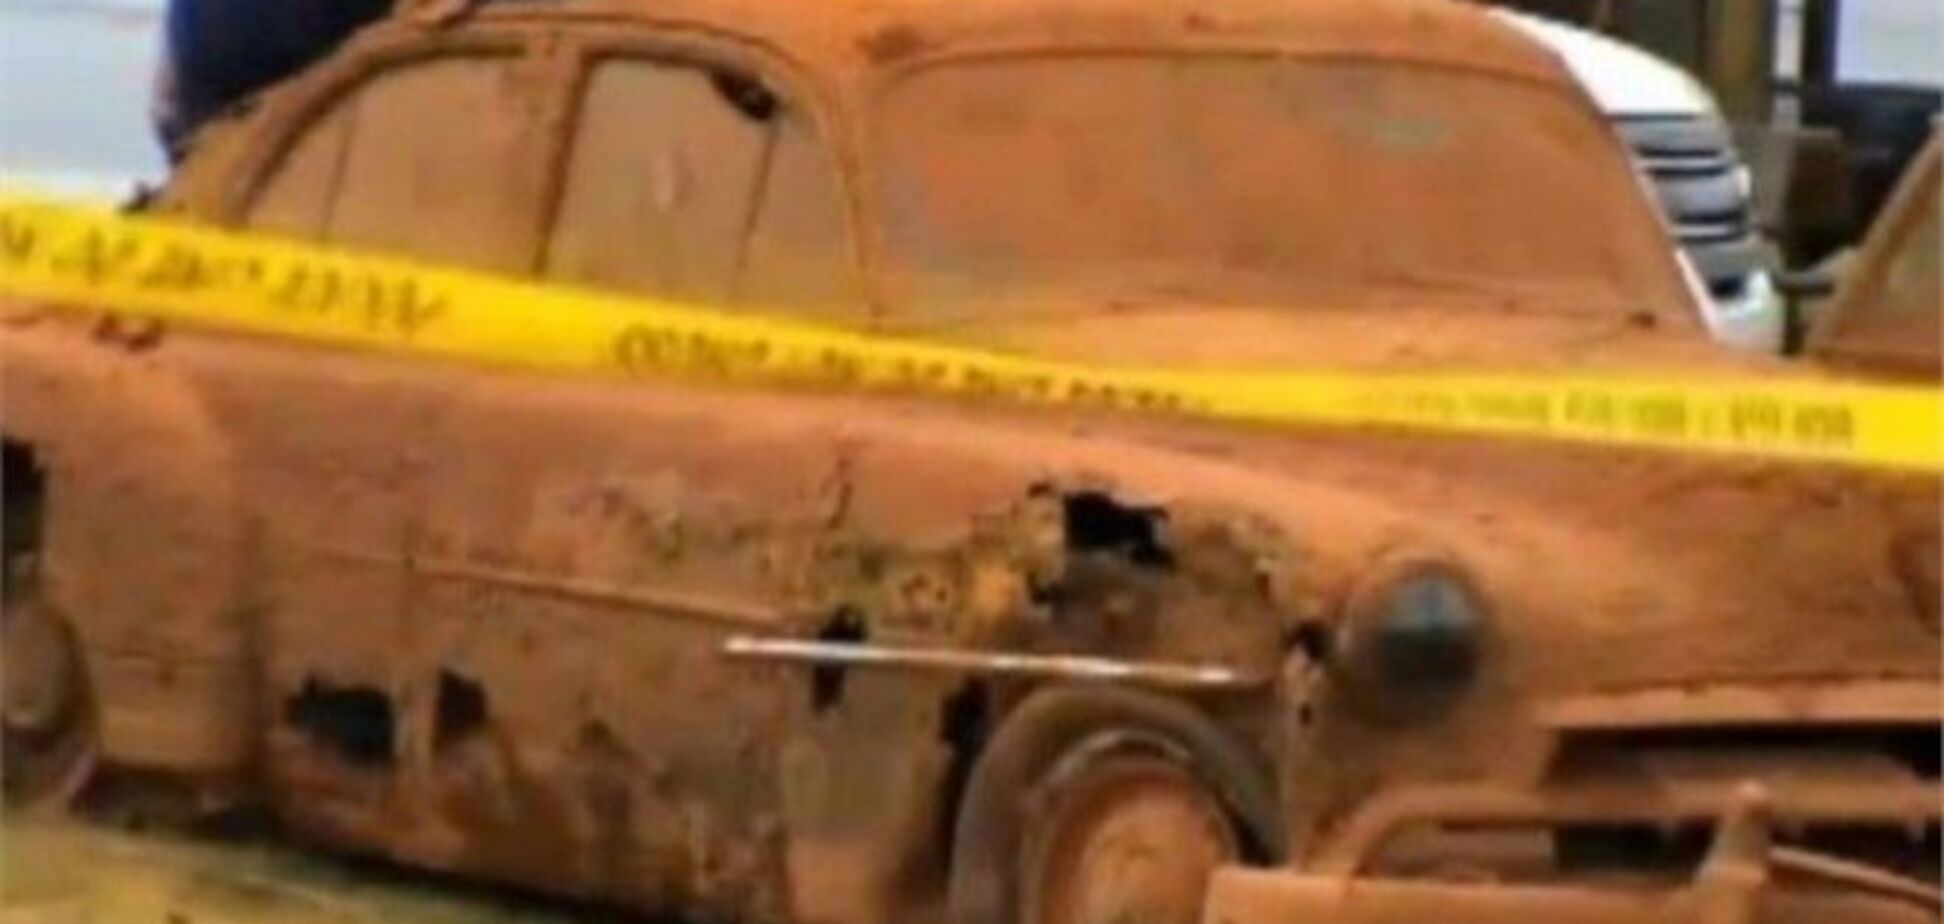 У США на дні озера знайшли автомобілі з останками людей 